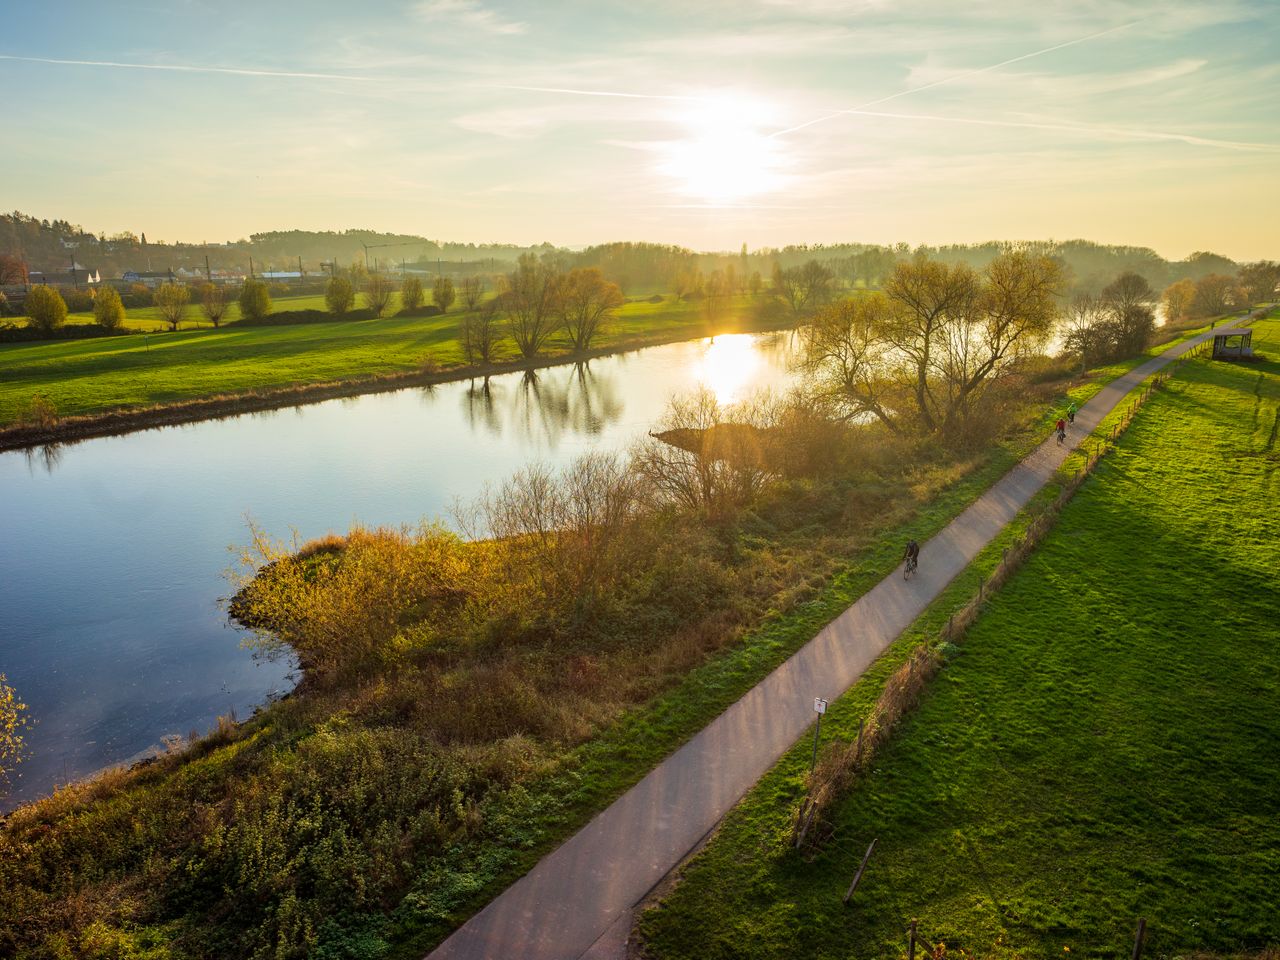 Radfahren an der Lahn und wohnen in Limburg | 3 Tage